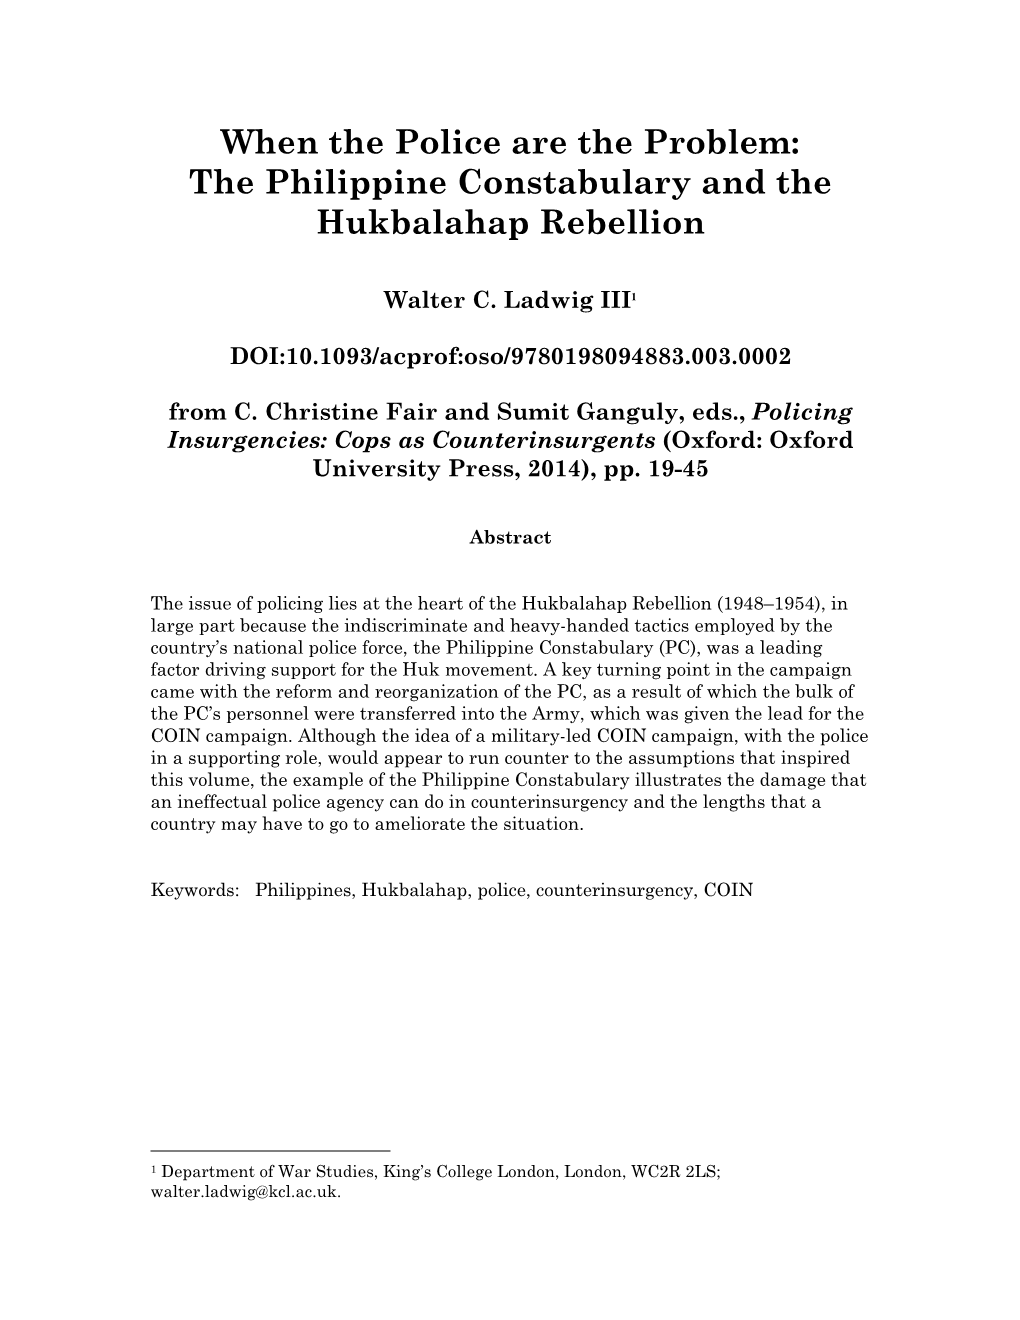 The Philippine Constabulary and the Hukbalahap Rebellion